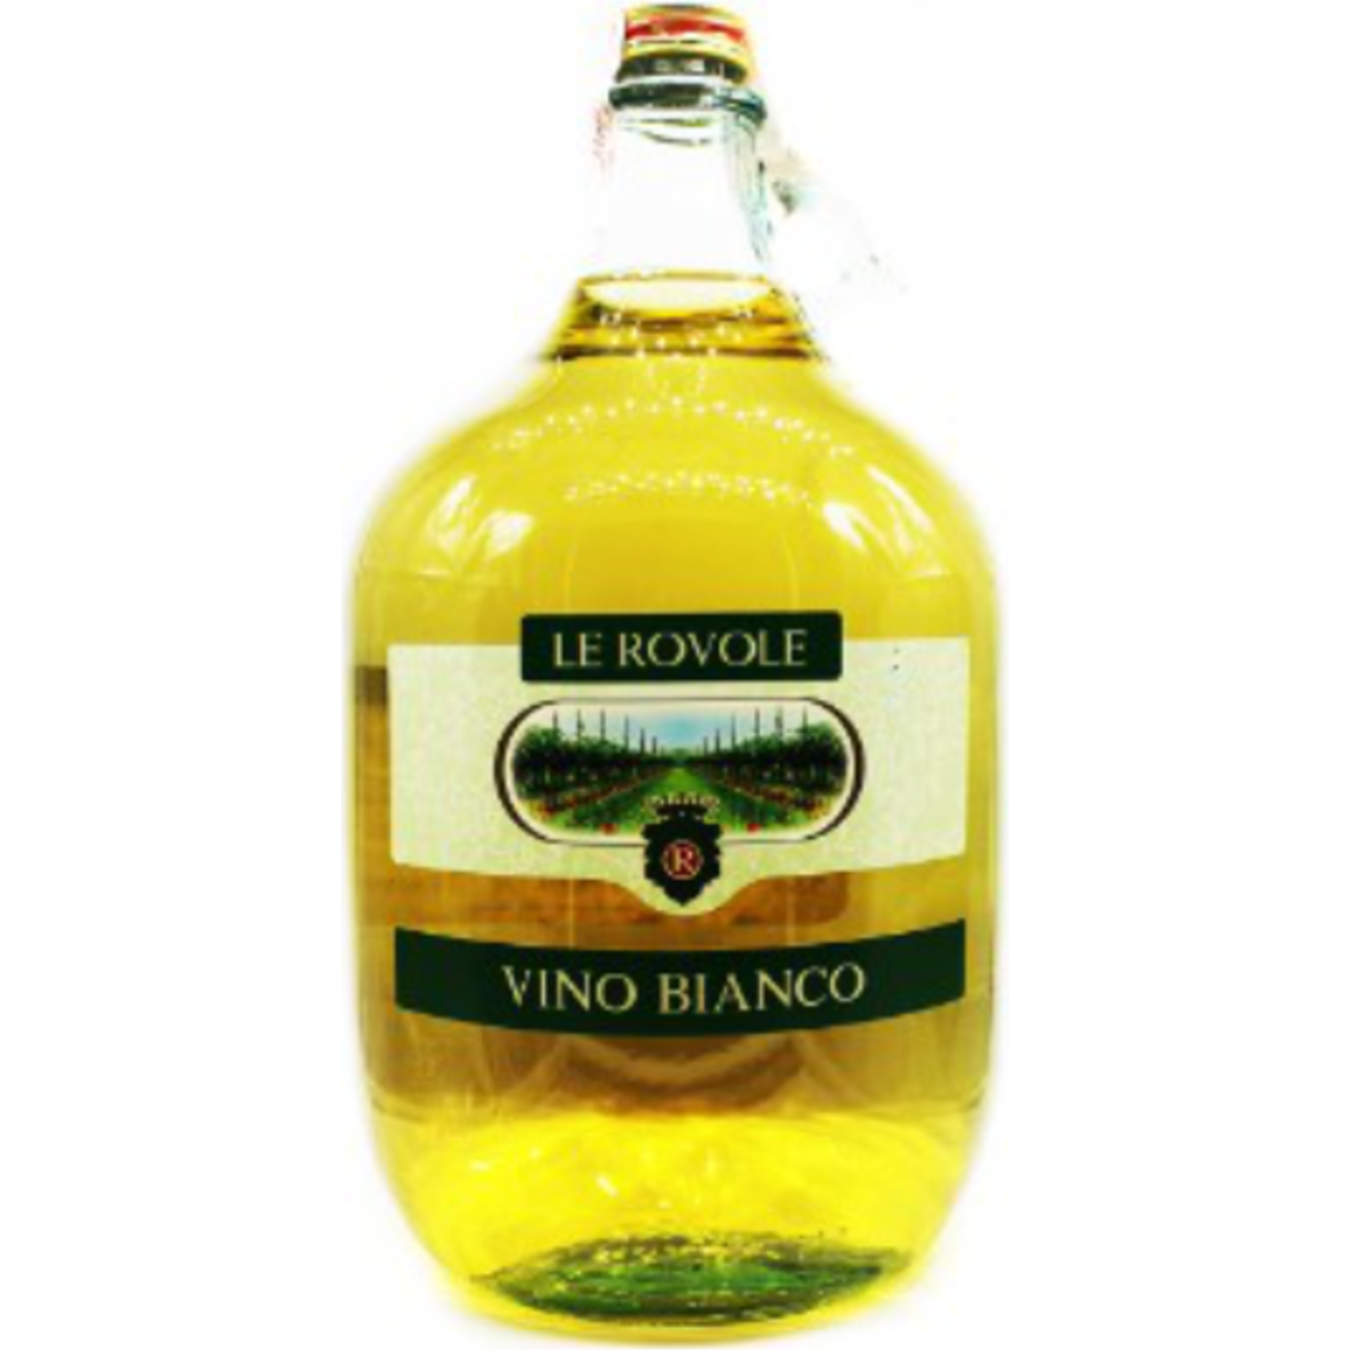 Le Rovole Vino Bianco Wine white dry 10% 5l 2